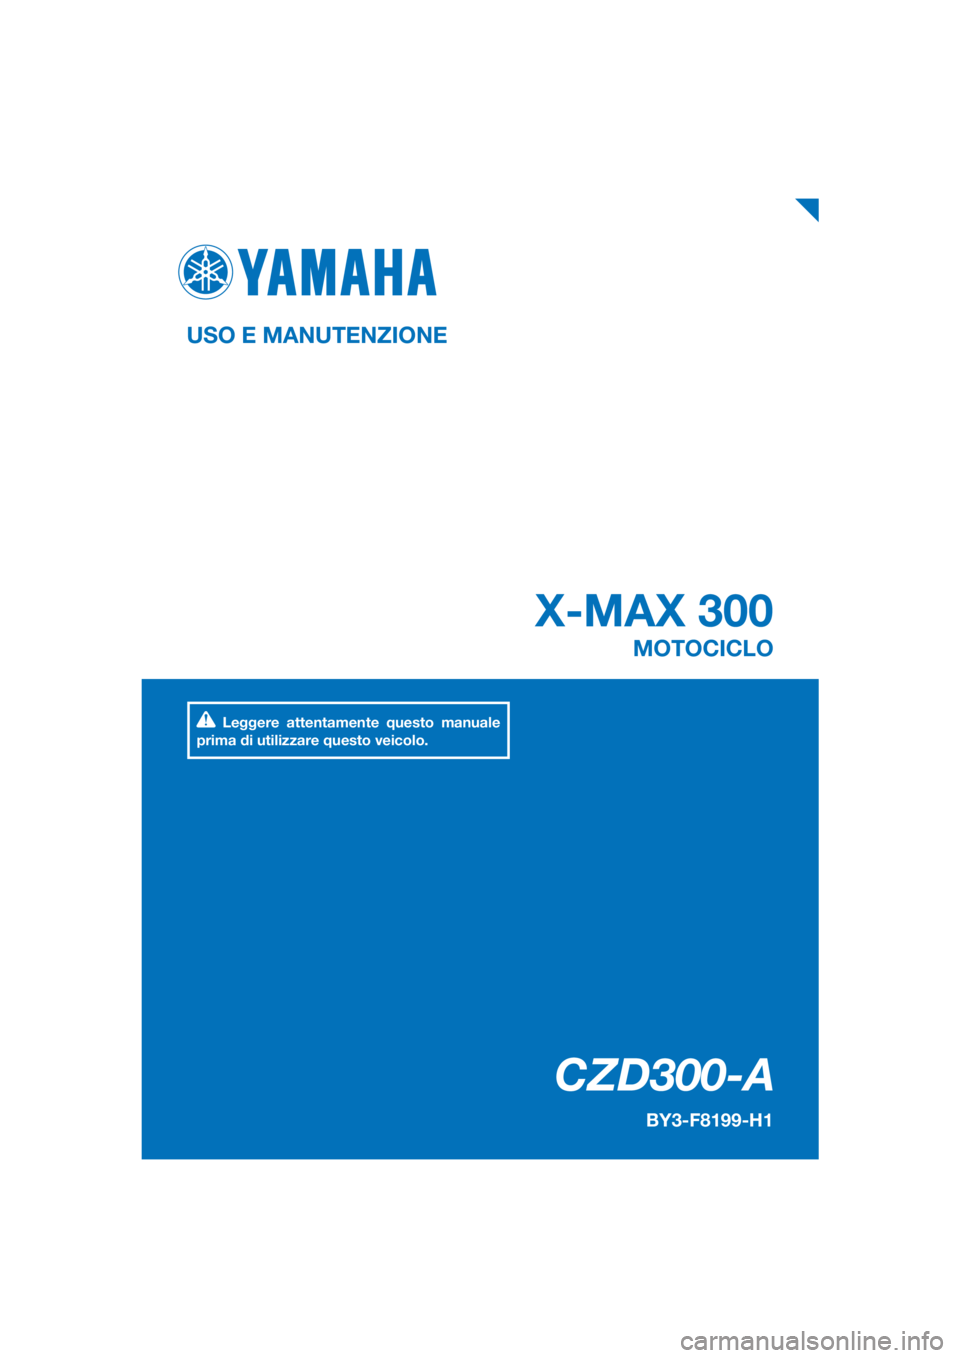 YAMAHA XMAX 300 2018  Manuale duso (in Italian) PANTONE285C
CZD300-A
X-MAX 300
USO E MANUTENZIONE
BY3-F8199-H1
MOTOCICLO
Leggere attentamente questo manuale 
prima di utilizzare questo veicolo.
[Italian  (H)] 